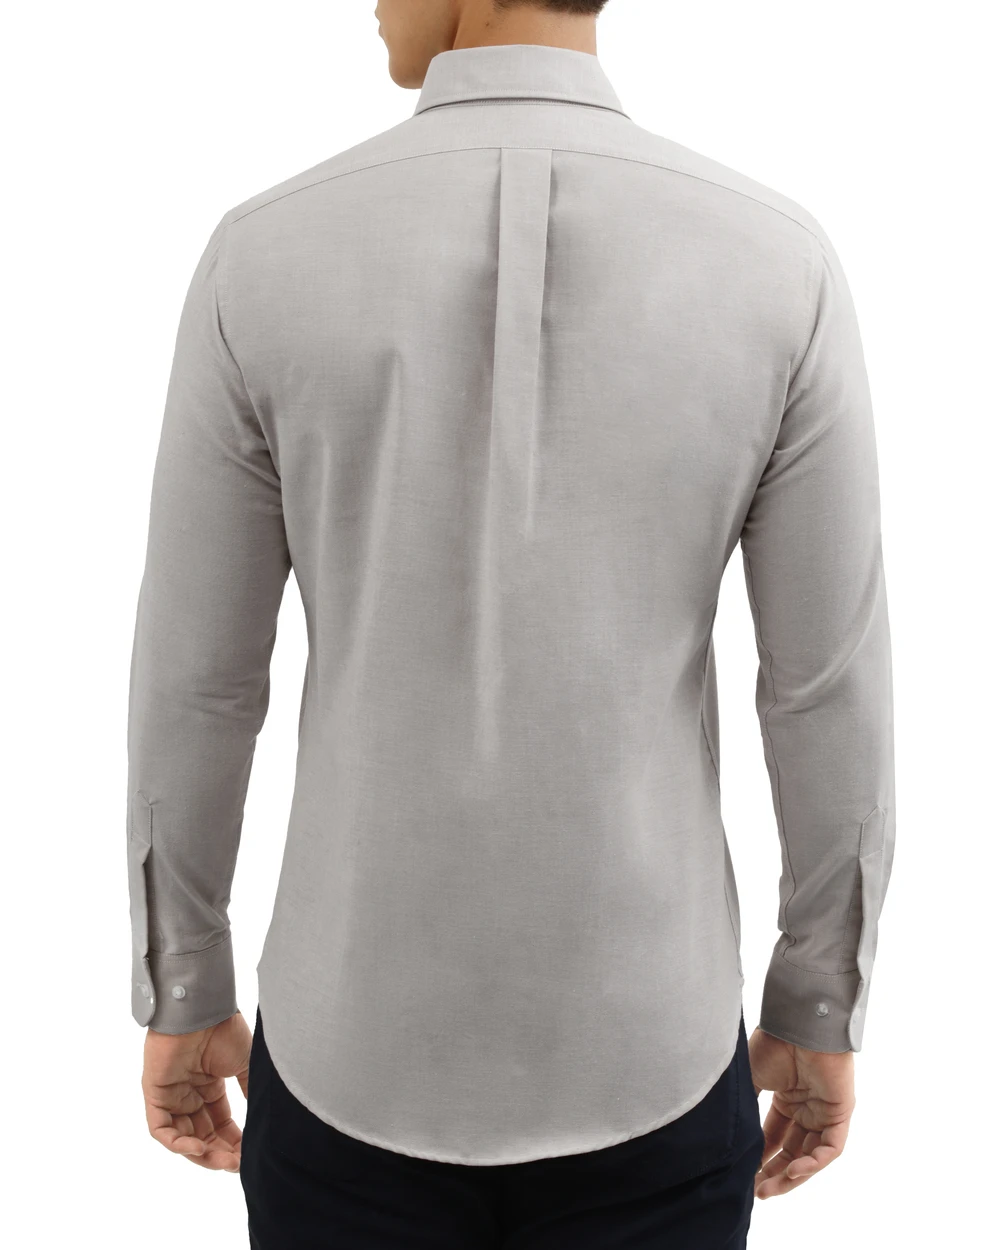 Camisa slim fit manga larga   oxford color gris
